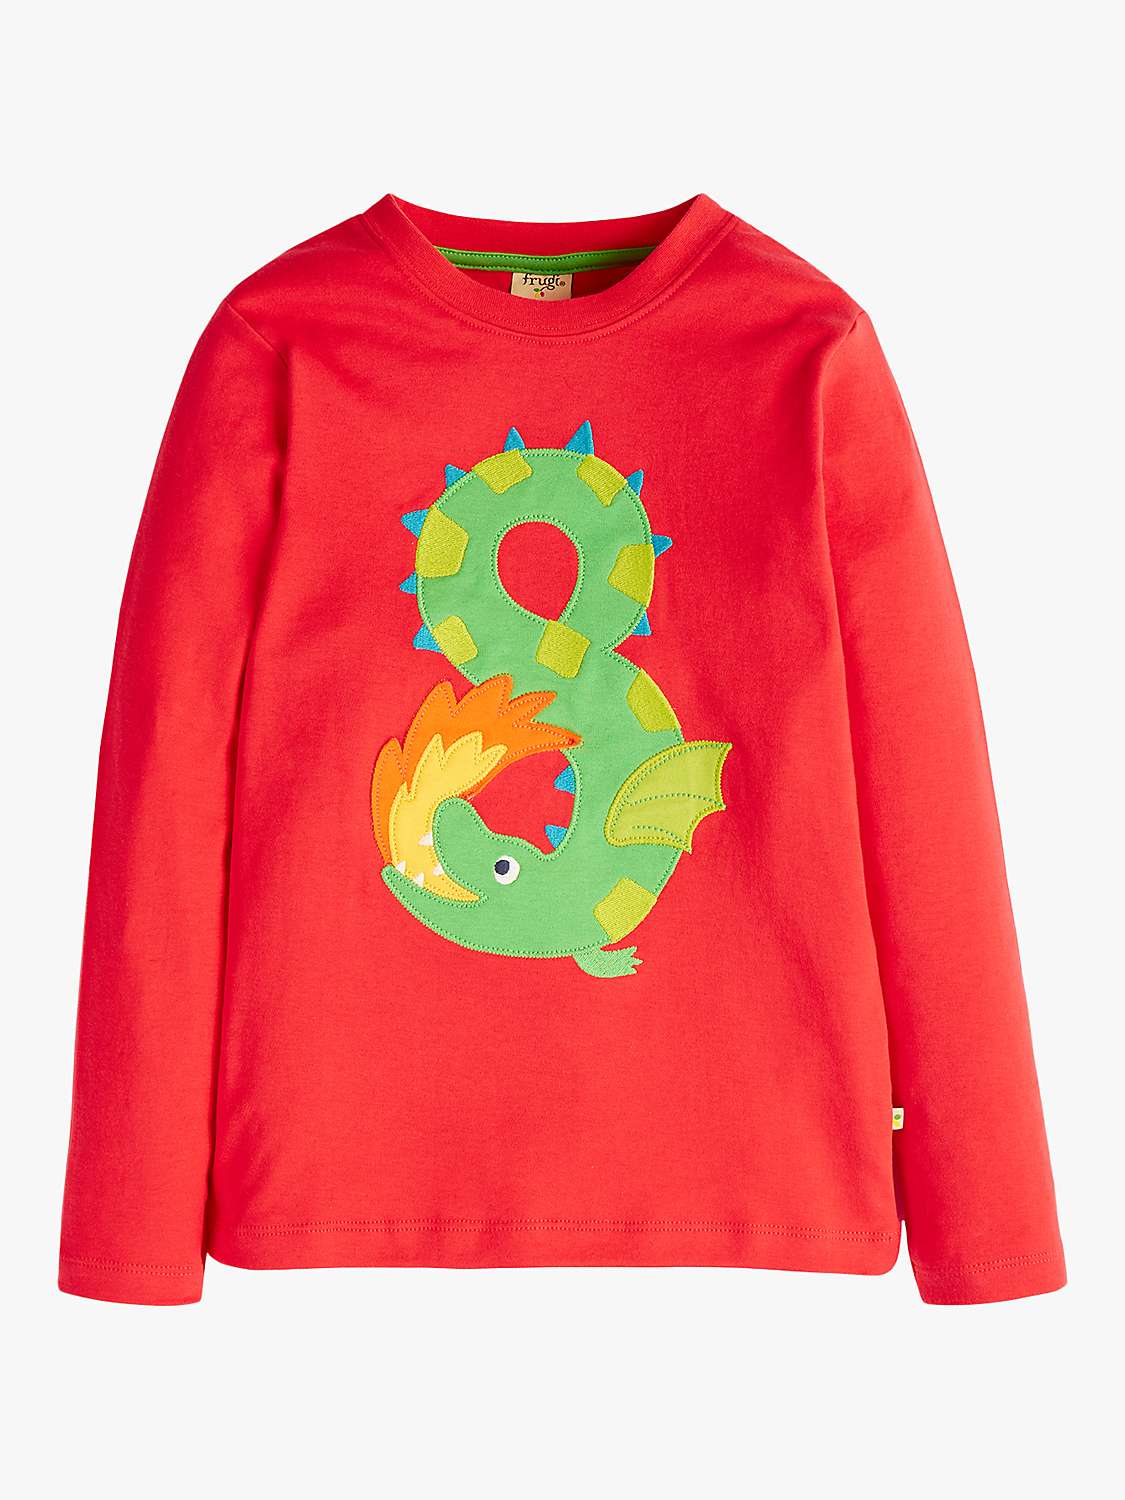 Buy Frugi Kids' Magic Number 8 Organic Cotton Dragon T-shirt, True Red/Multi Online at johnlewis.com